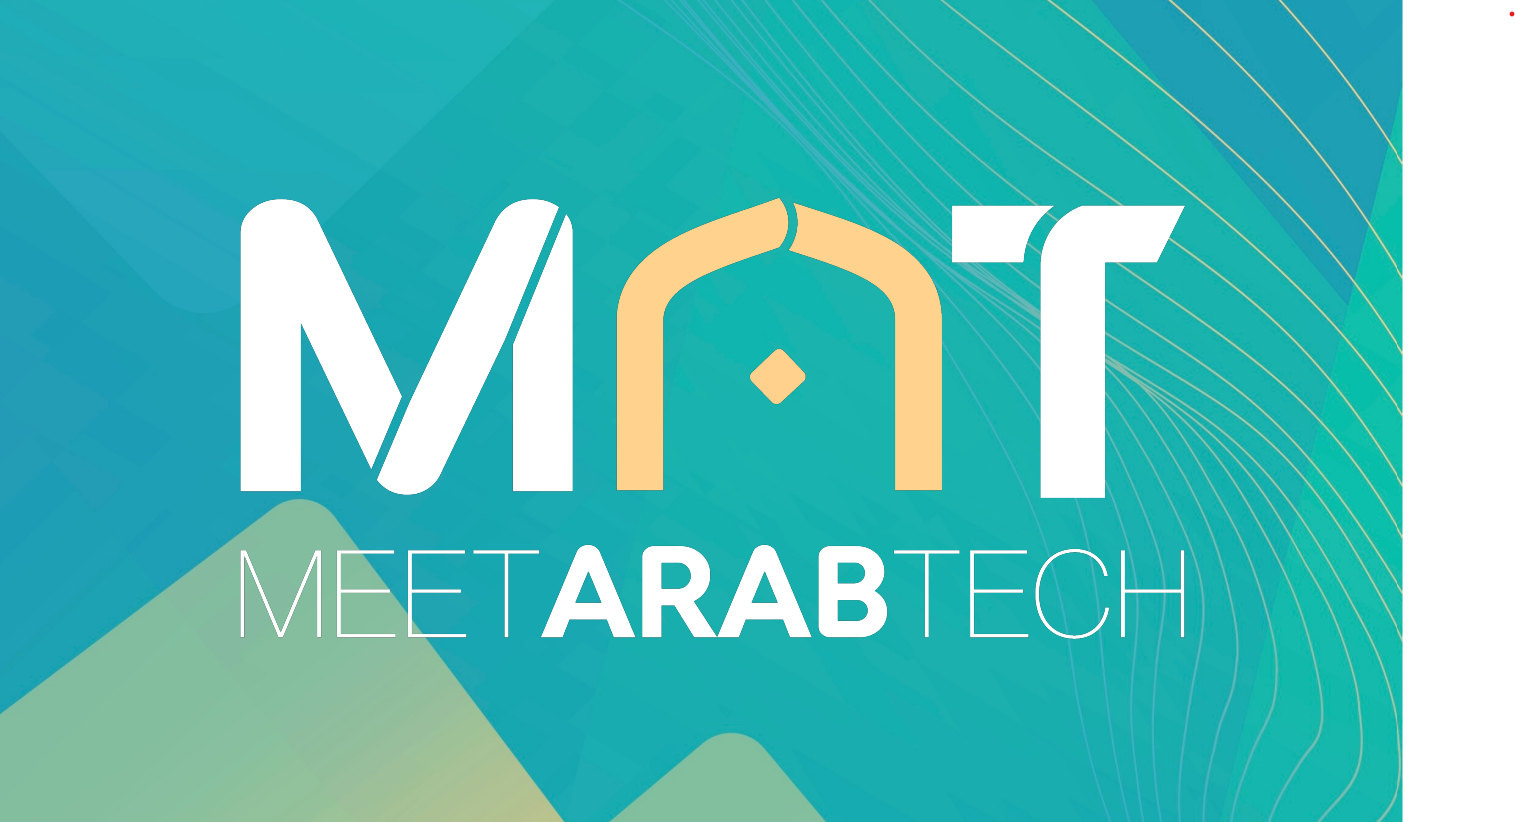 Meet Arab Tech